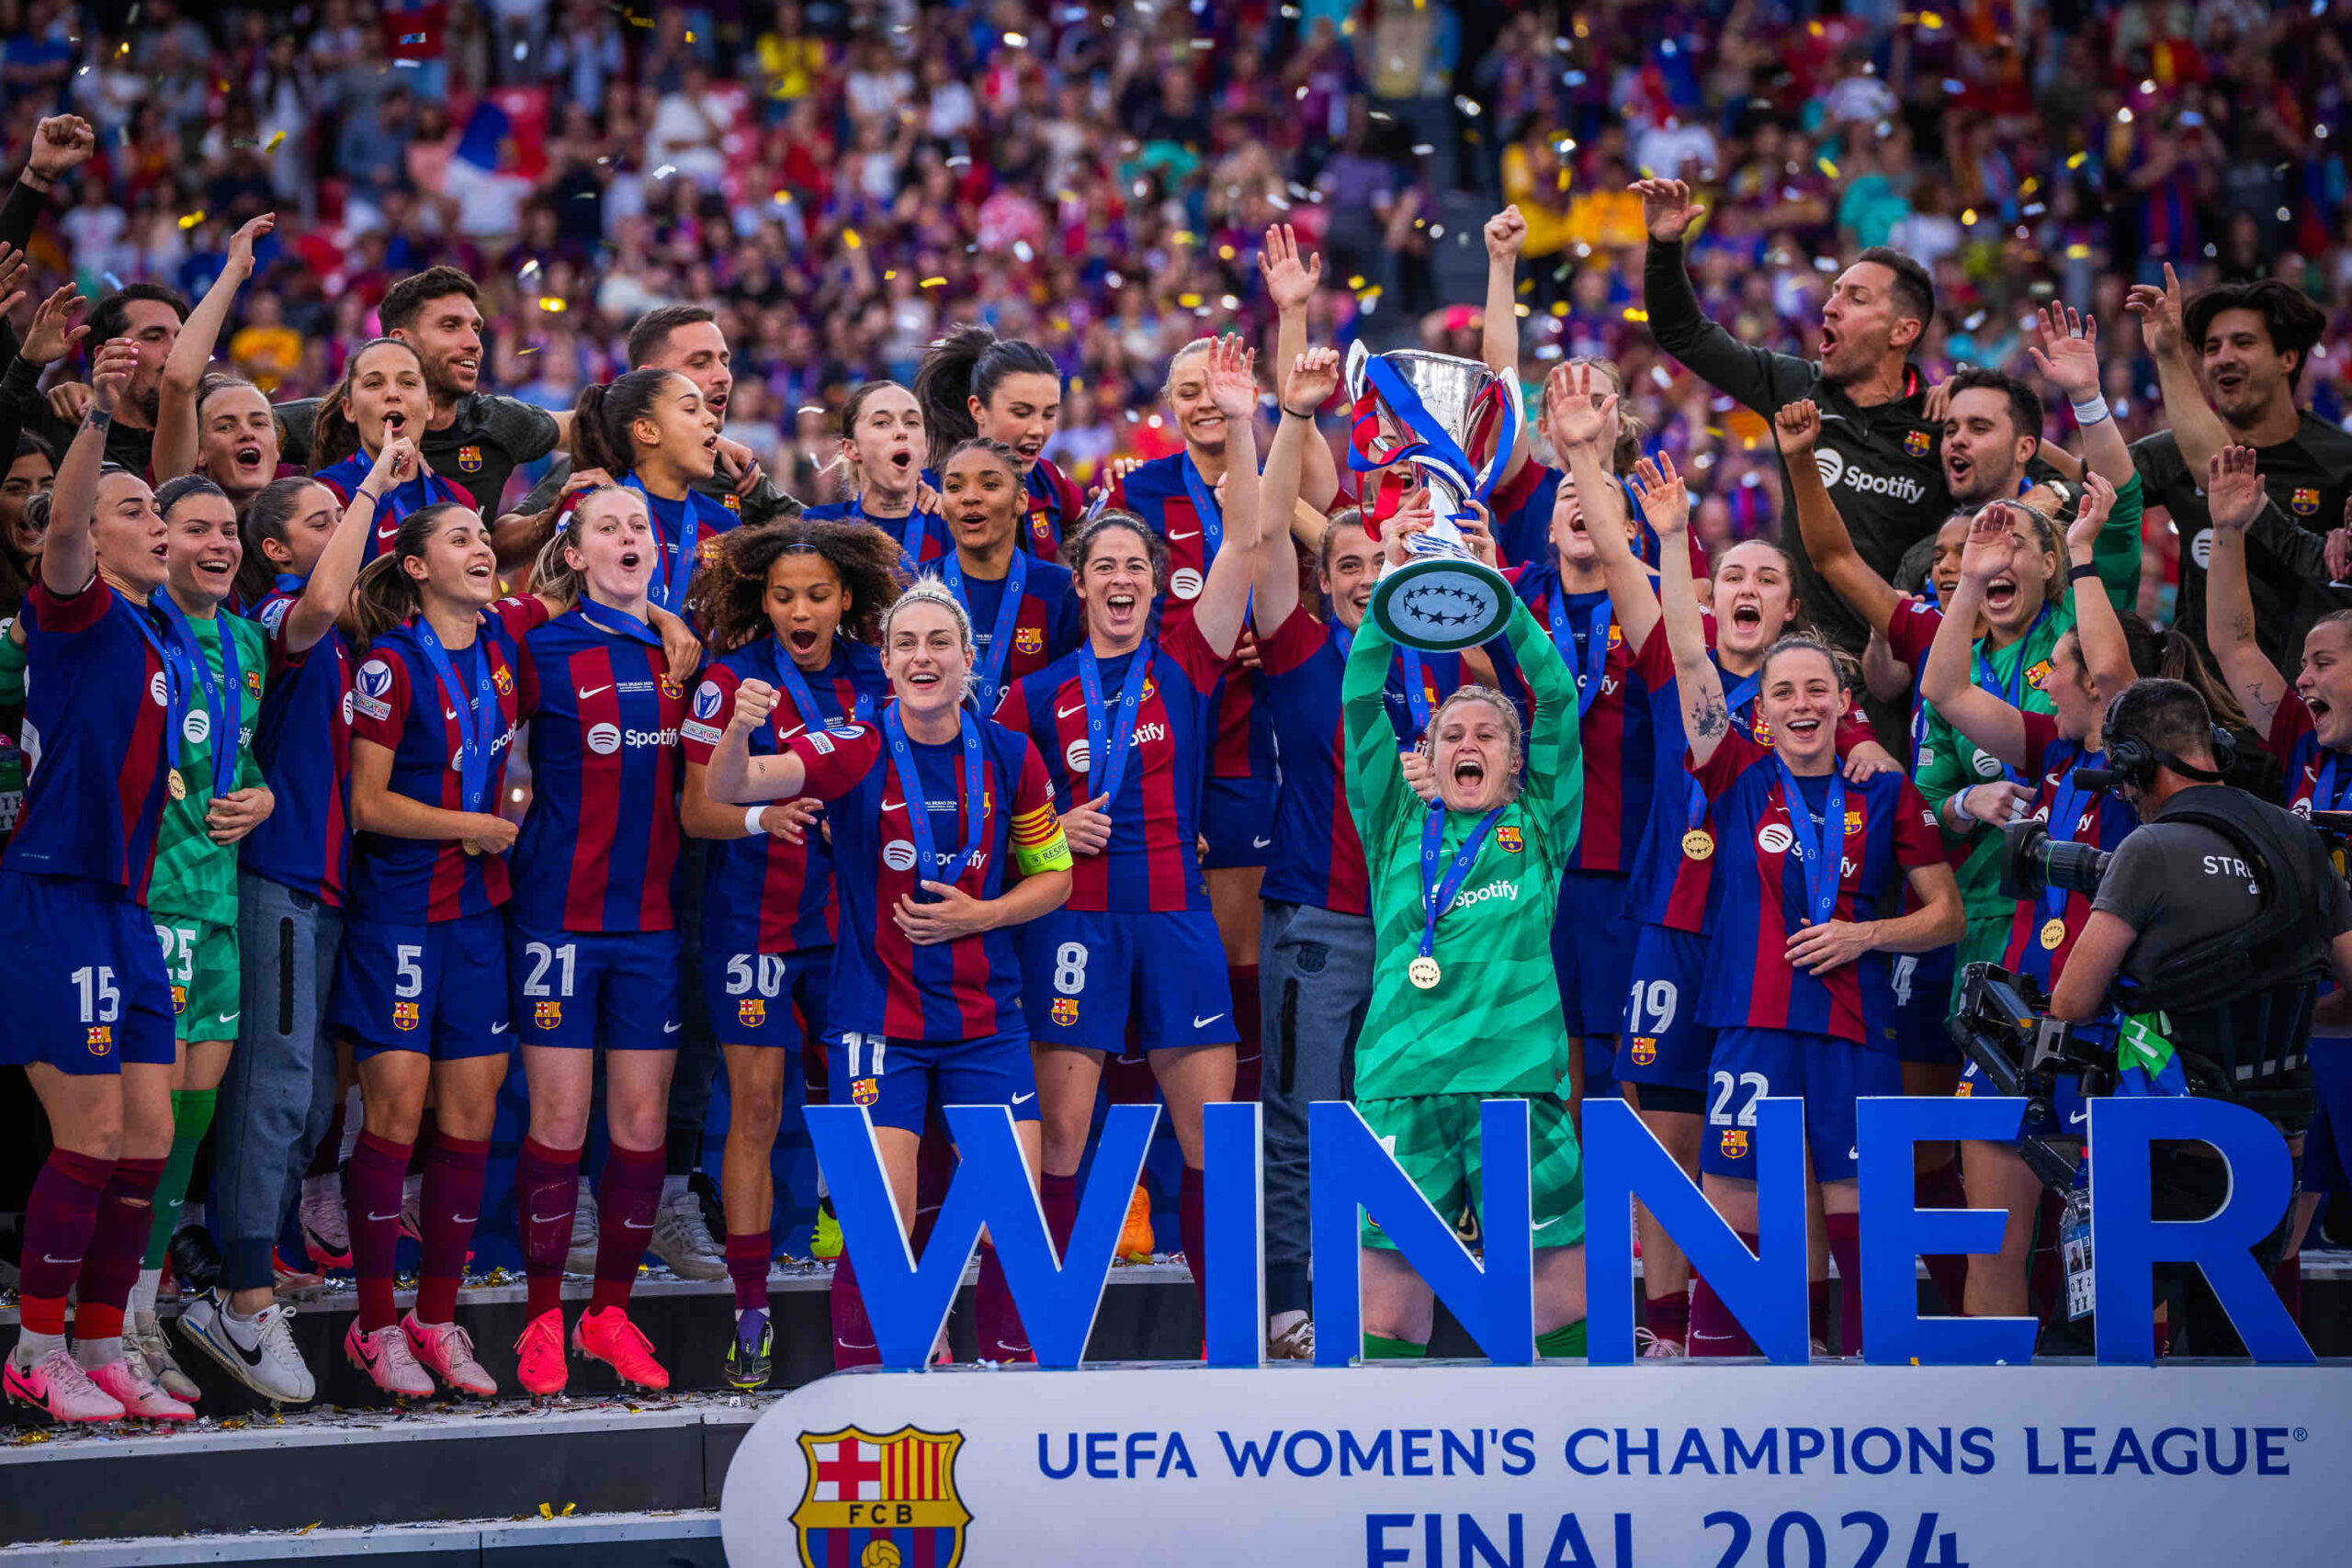 El FC Barcelona Femenino hace historia en Bilbao